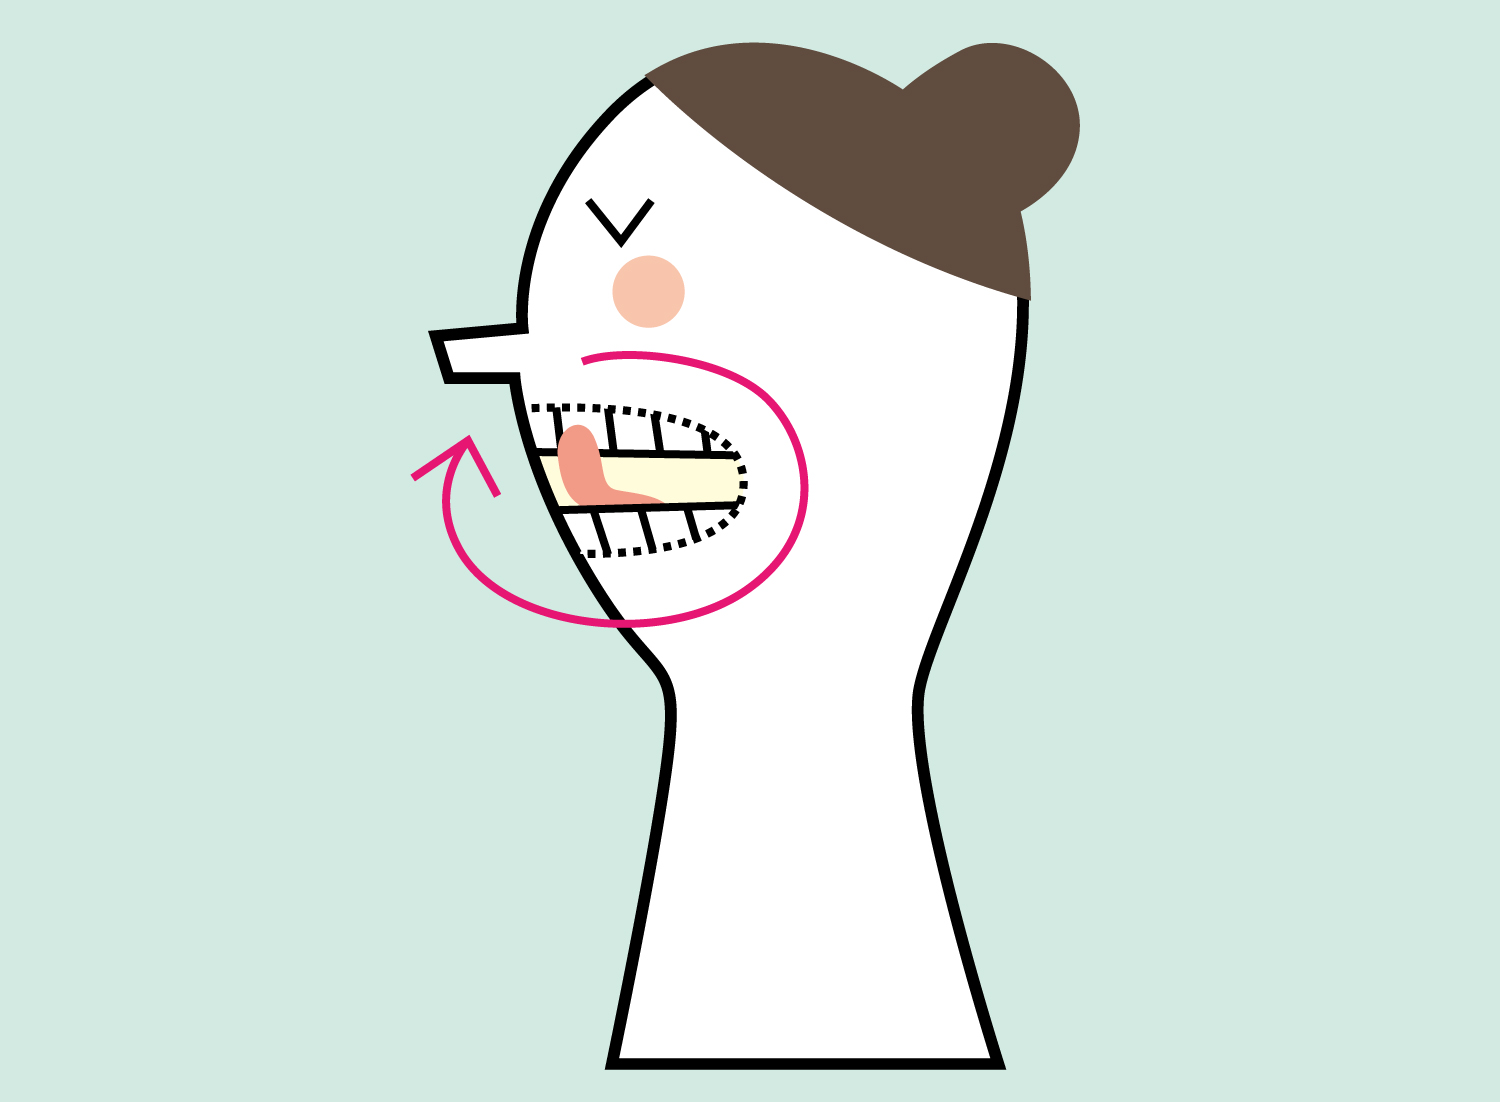 ３. 舌を歯と唇の間に入れて、口を開かないようにしながら、ぐるりと大きく２回まわします。顔のシワを中から押し伸ばすような要領で、初めは右回り、次のターンで左回りで